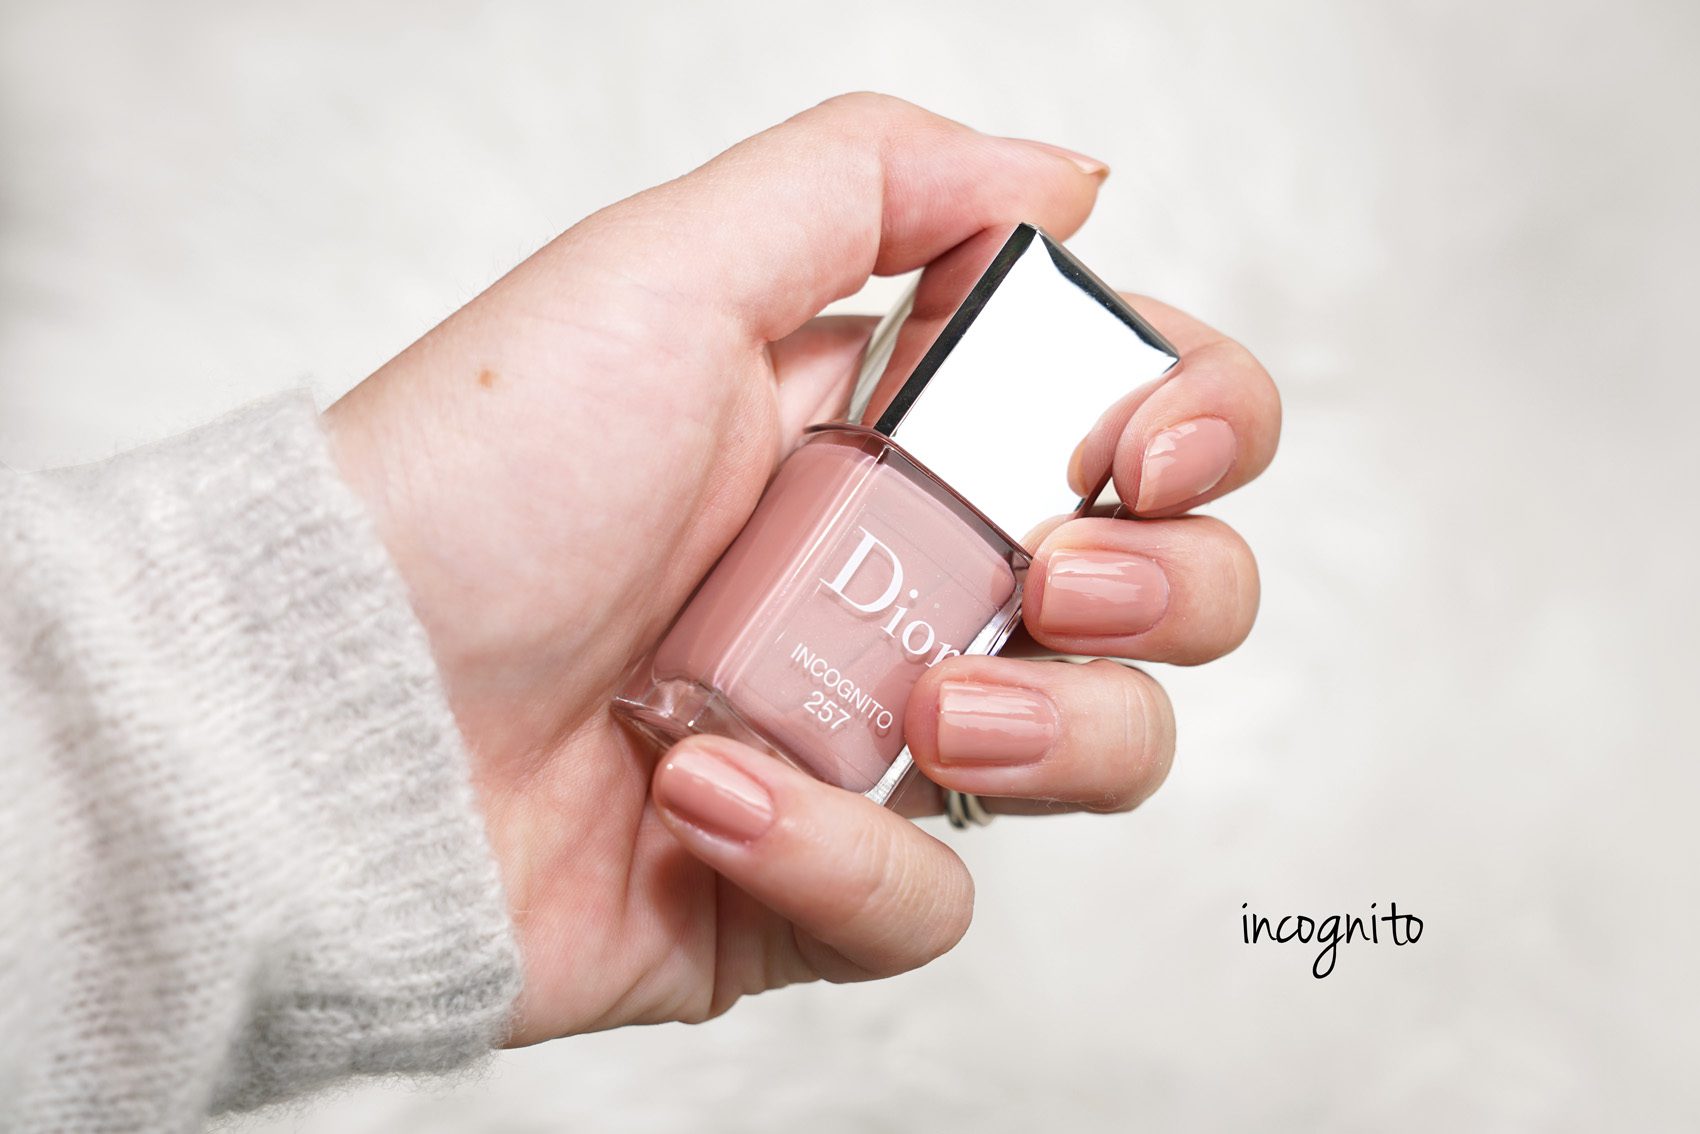 dior lady nail polish